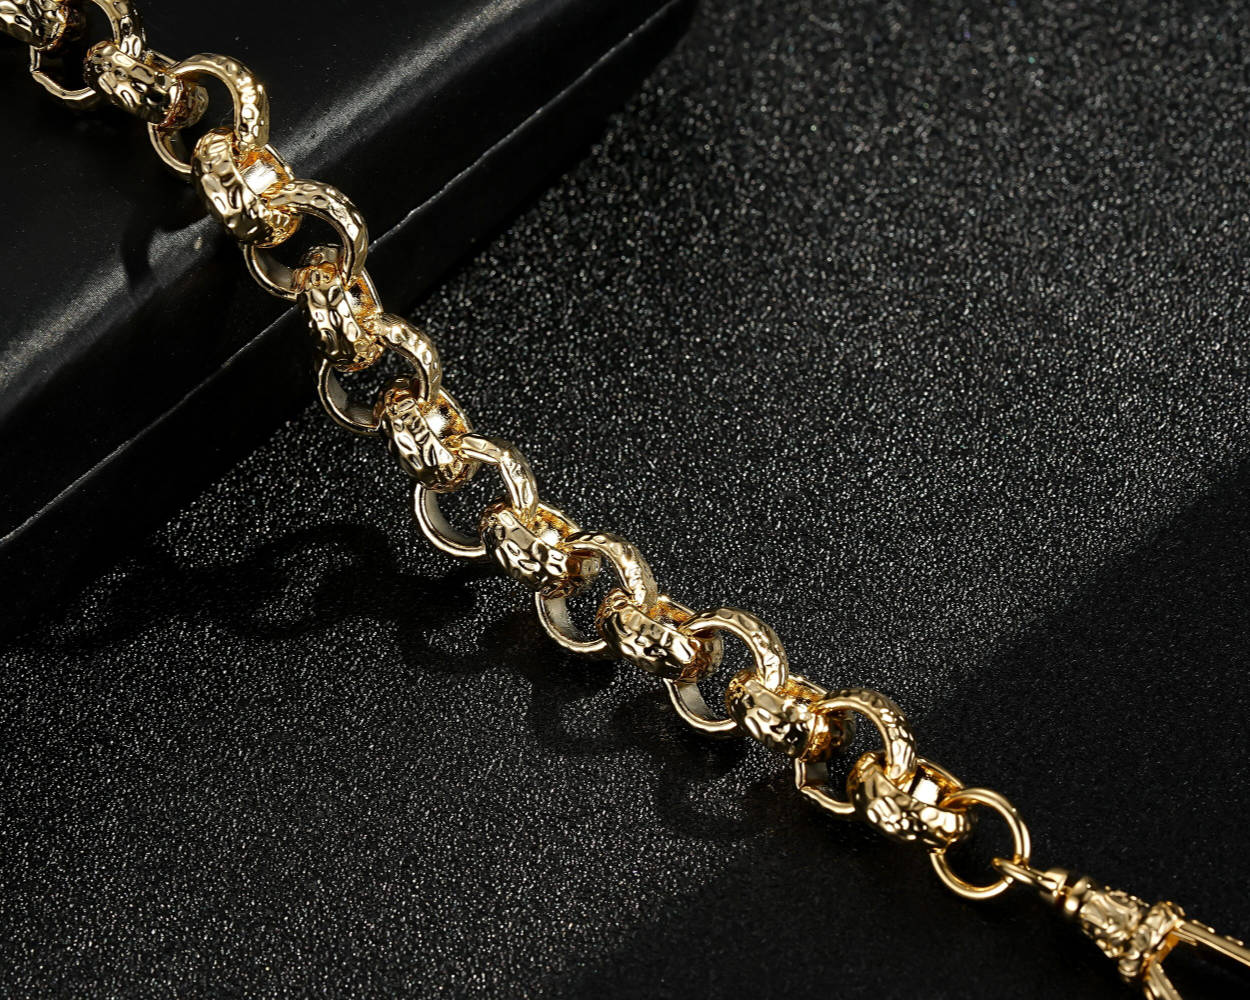 Luxury 12mm Gold Diamond Cut Pattern Belcher Bracelet with Albert Clasp